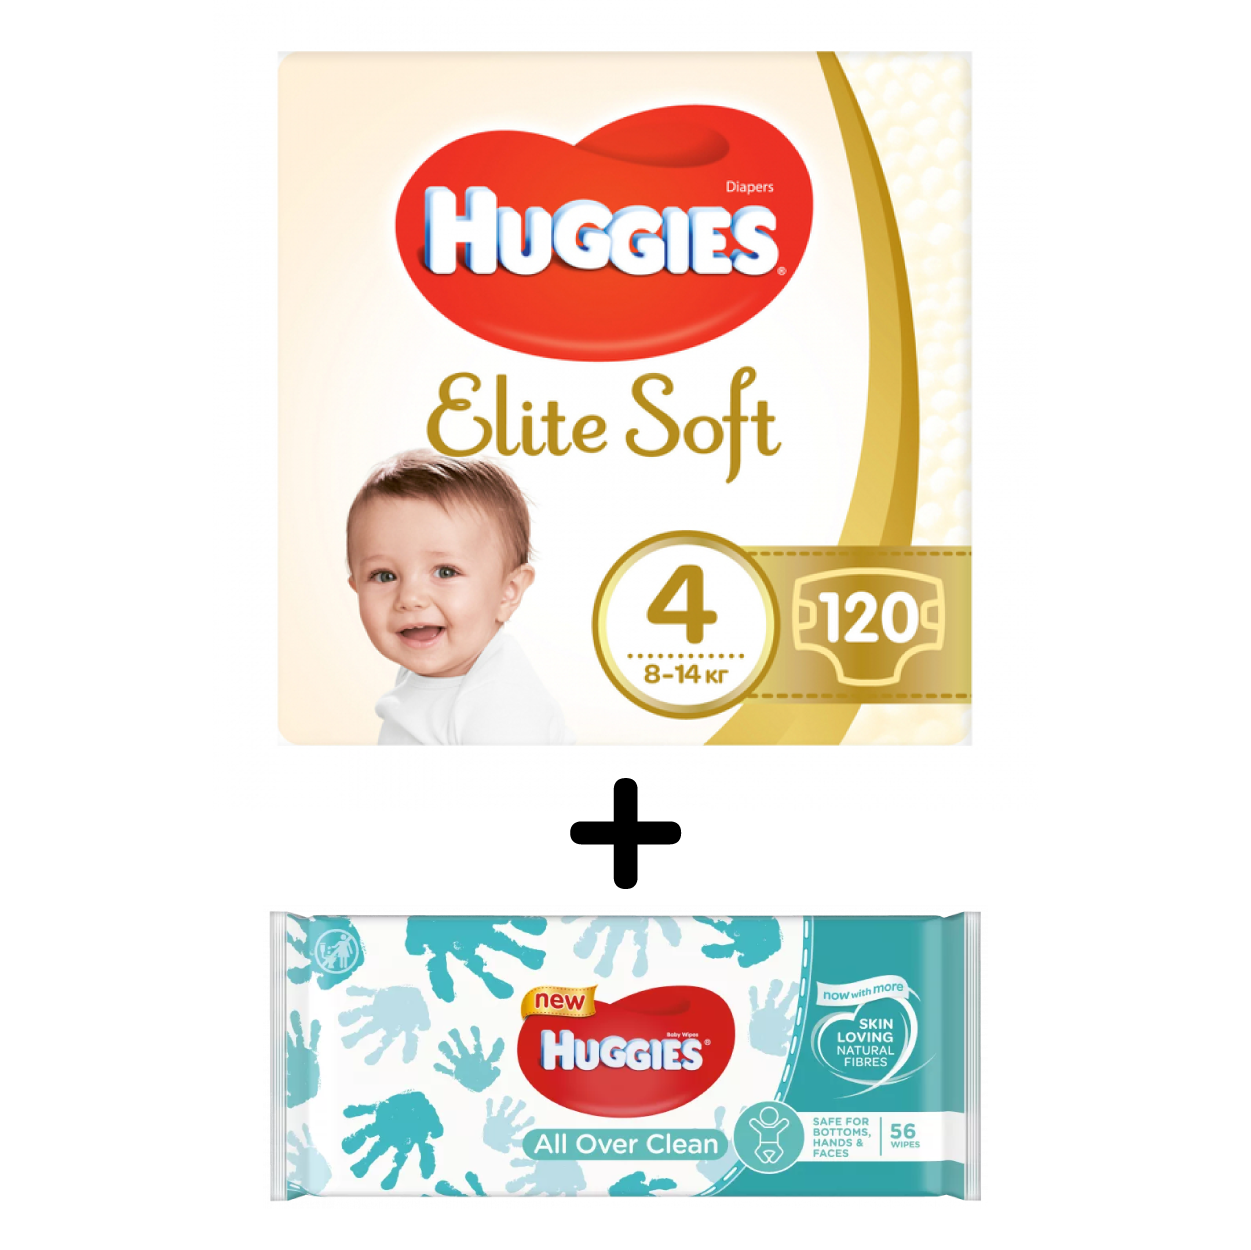 Набор Huggies: Подгузники Huggies Elite Soft 4 (8-14 кг), 120 шт. + Влажные салфетки Huggies All Over Clean, 56 шт. - фото 1